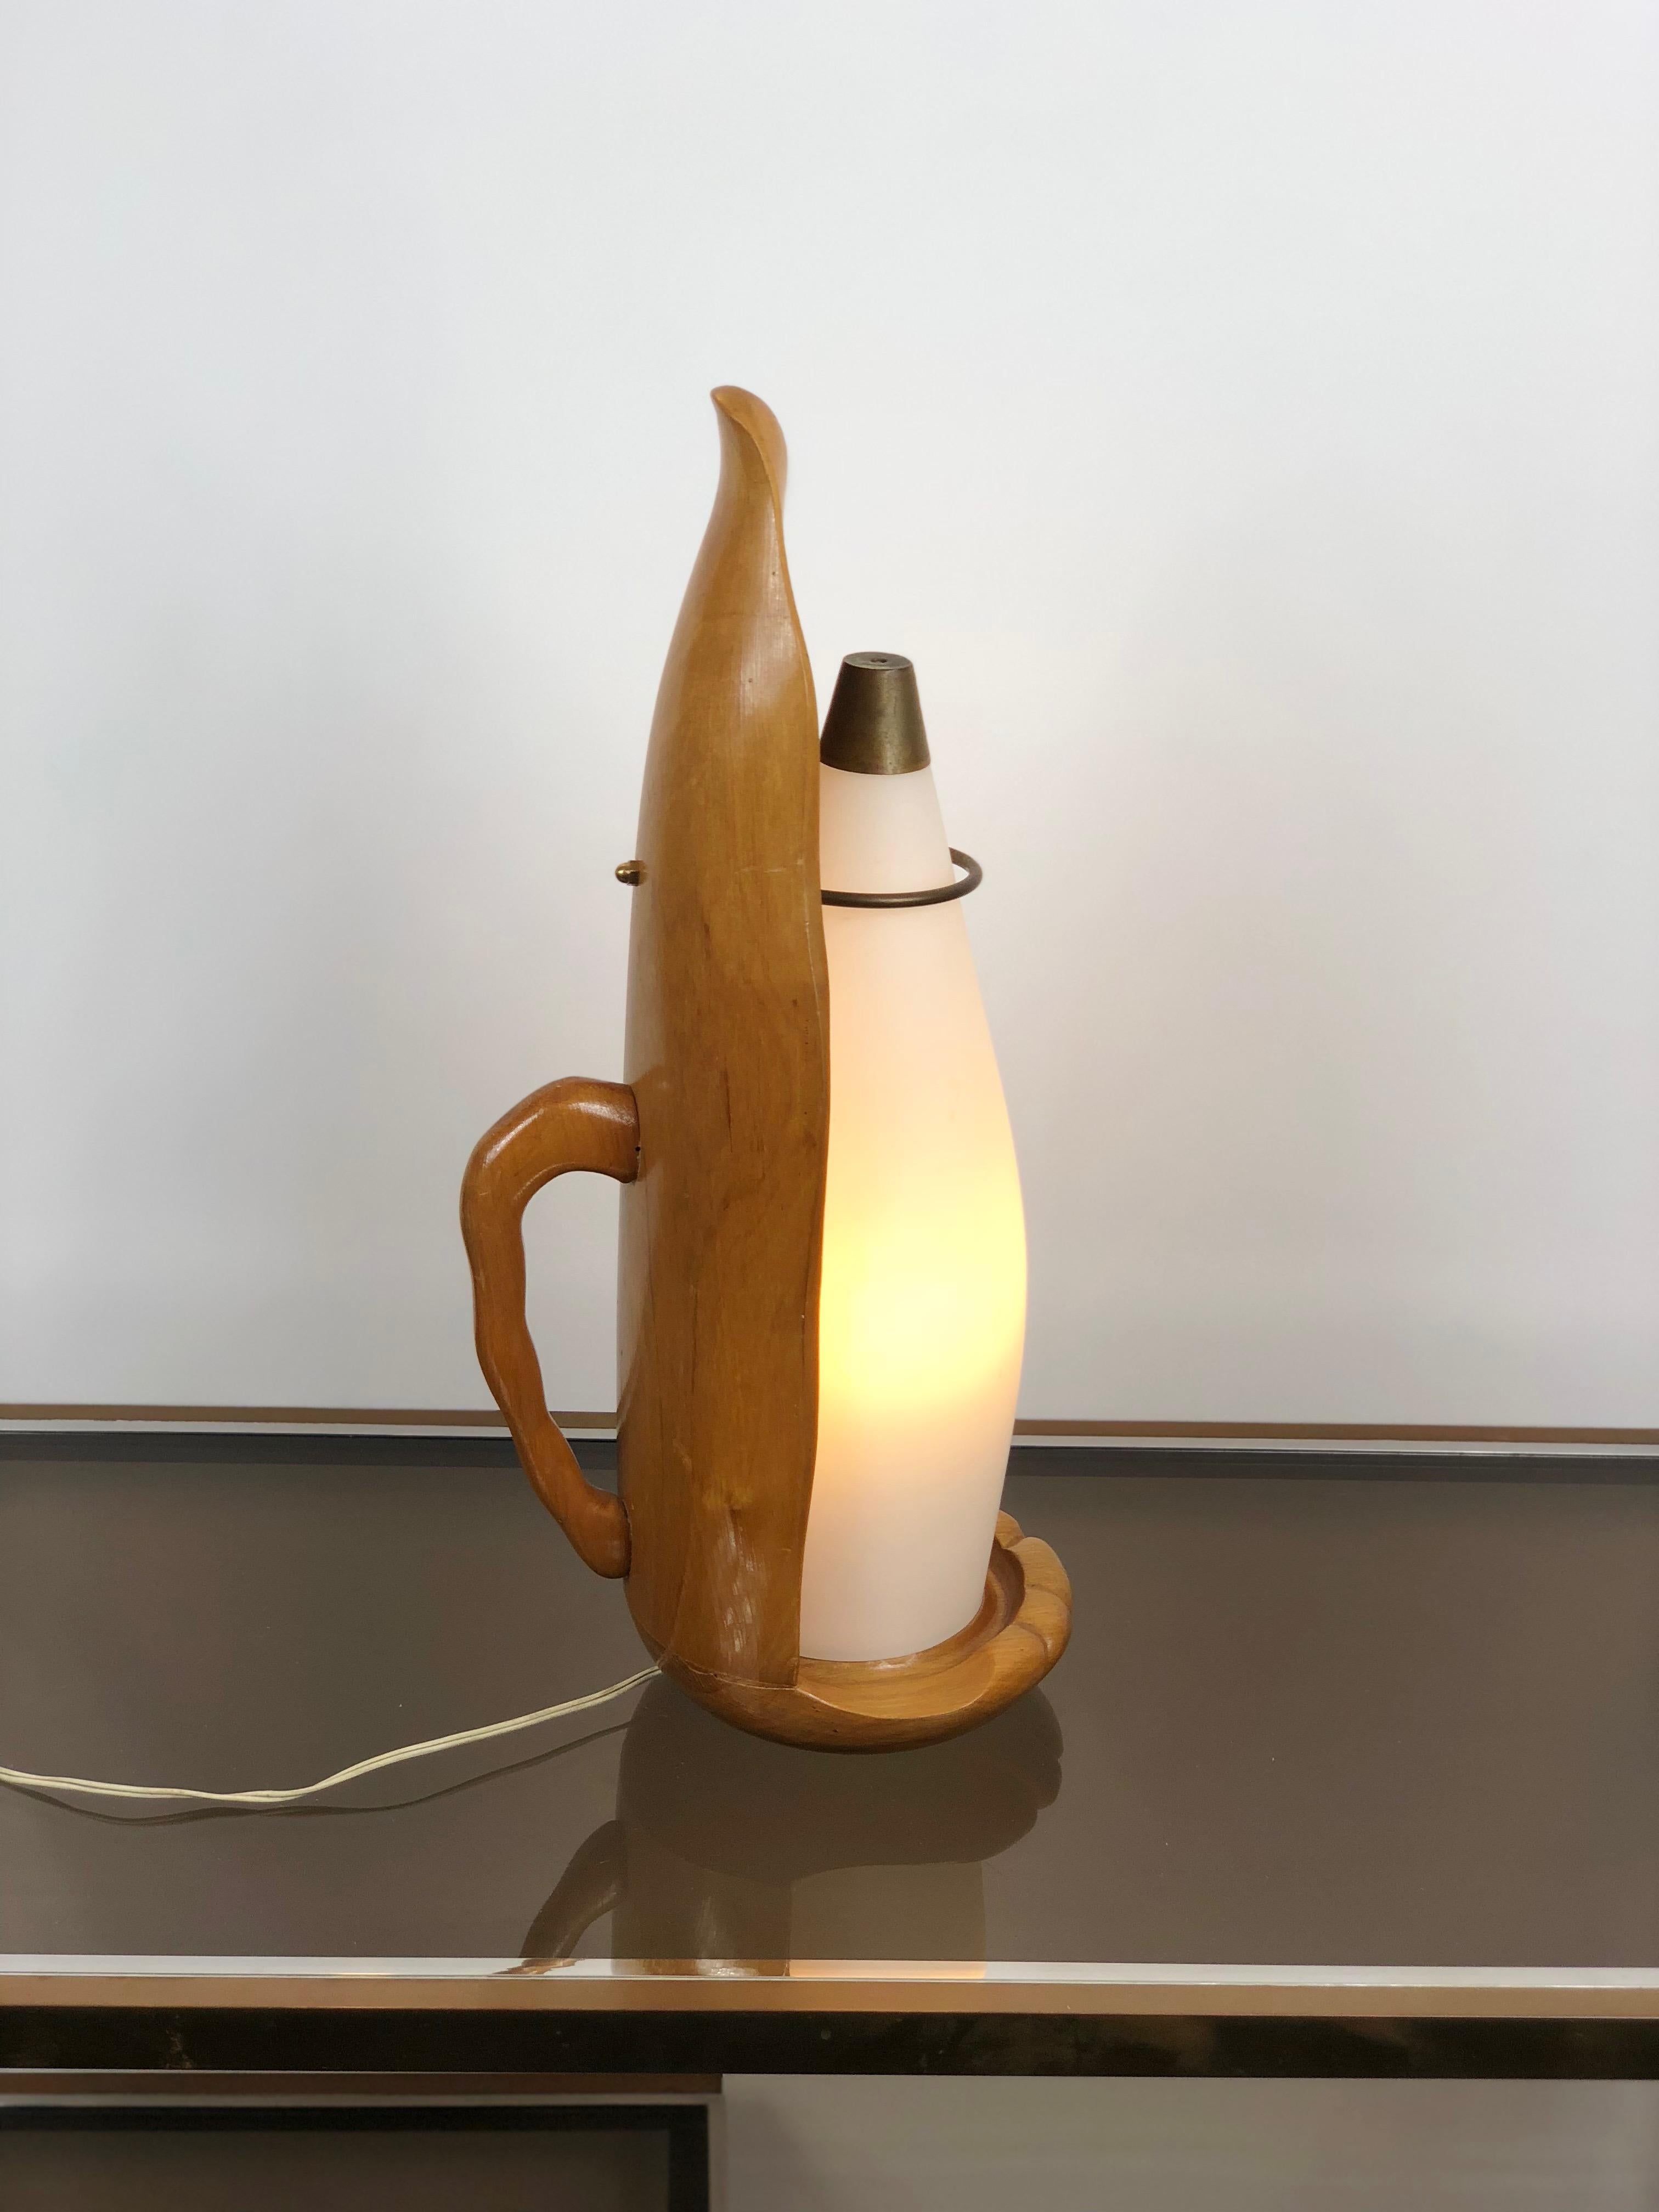 Cette lampe dauphin particulière et sophistiquée réalisée par Aldo Tura est très probablement une lampe protoype unique. Les lampes d'Aldo Tura ont été fabriquées en petites séries, et les détails et le niveau de sophistication de la sculpture de